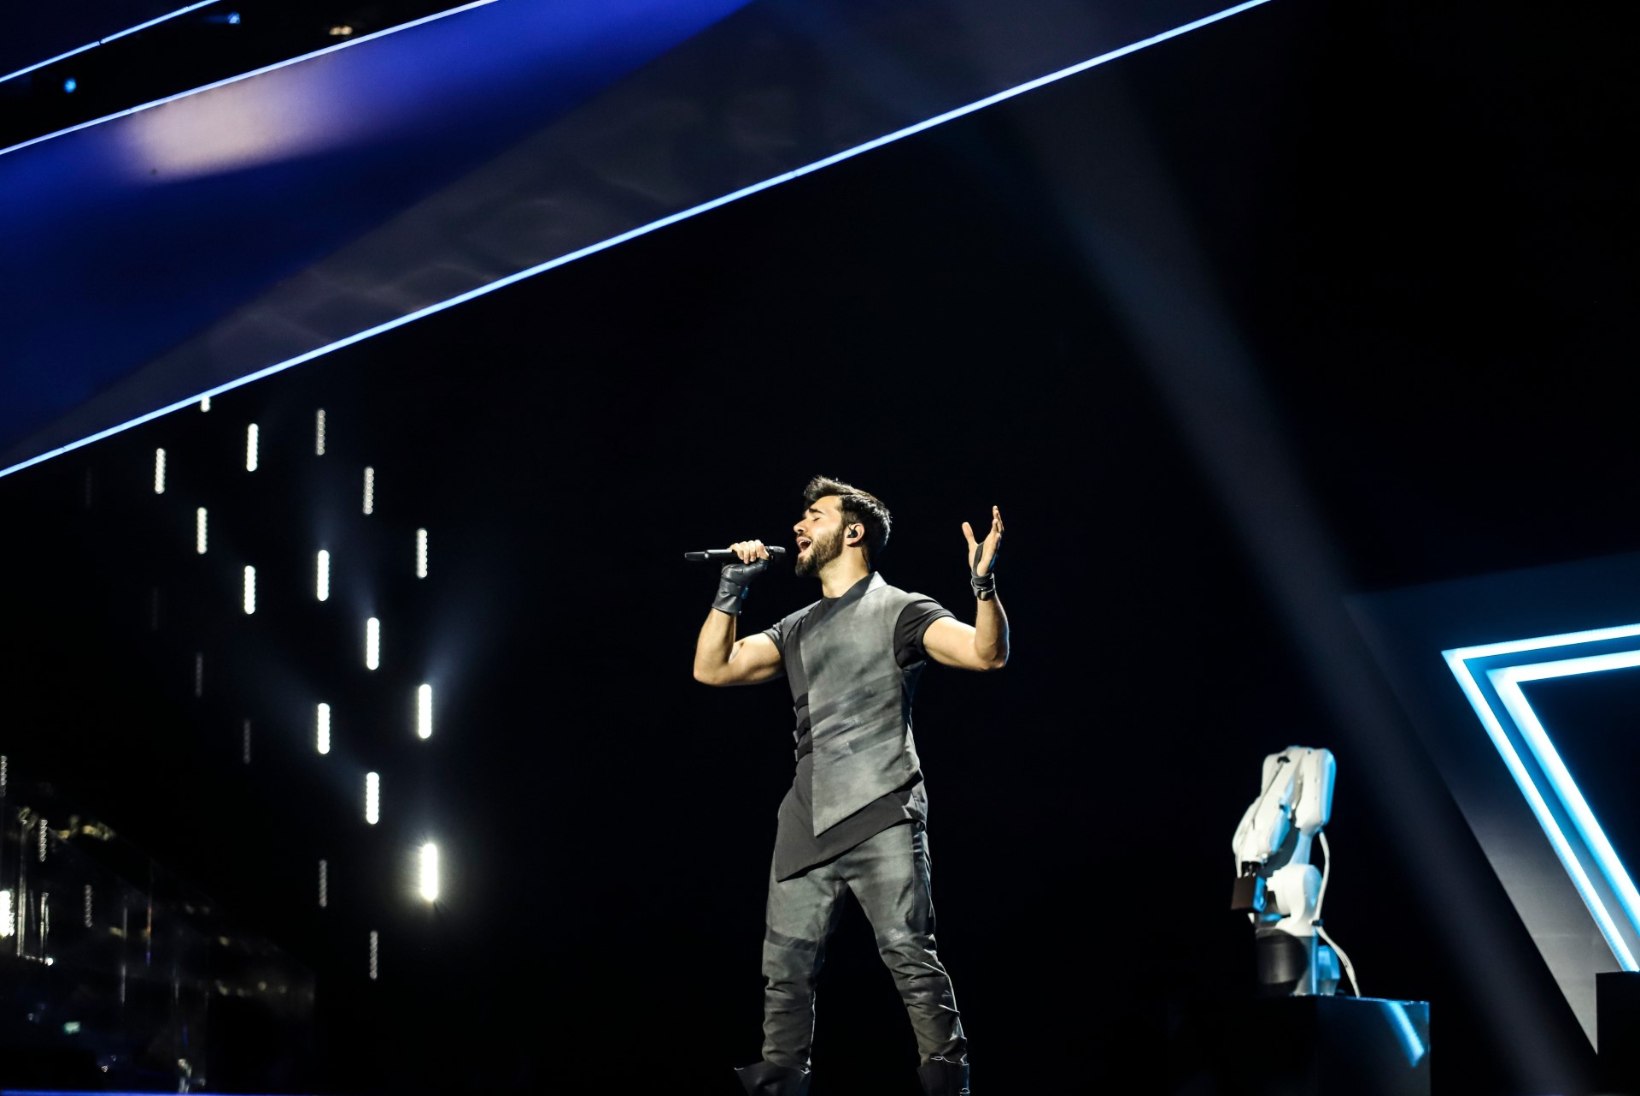 BLOGI JA GALERII | Eurovisioni finalistid selged! Ainus finaalist välja jäänud põhjamaa oli Soome!